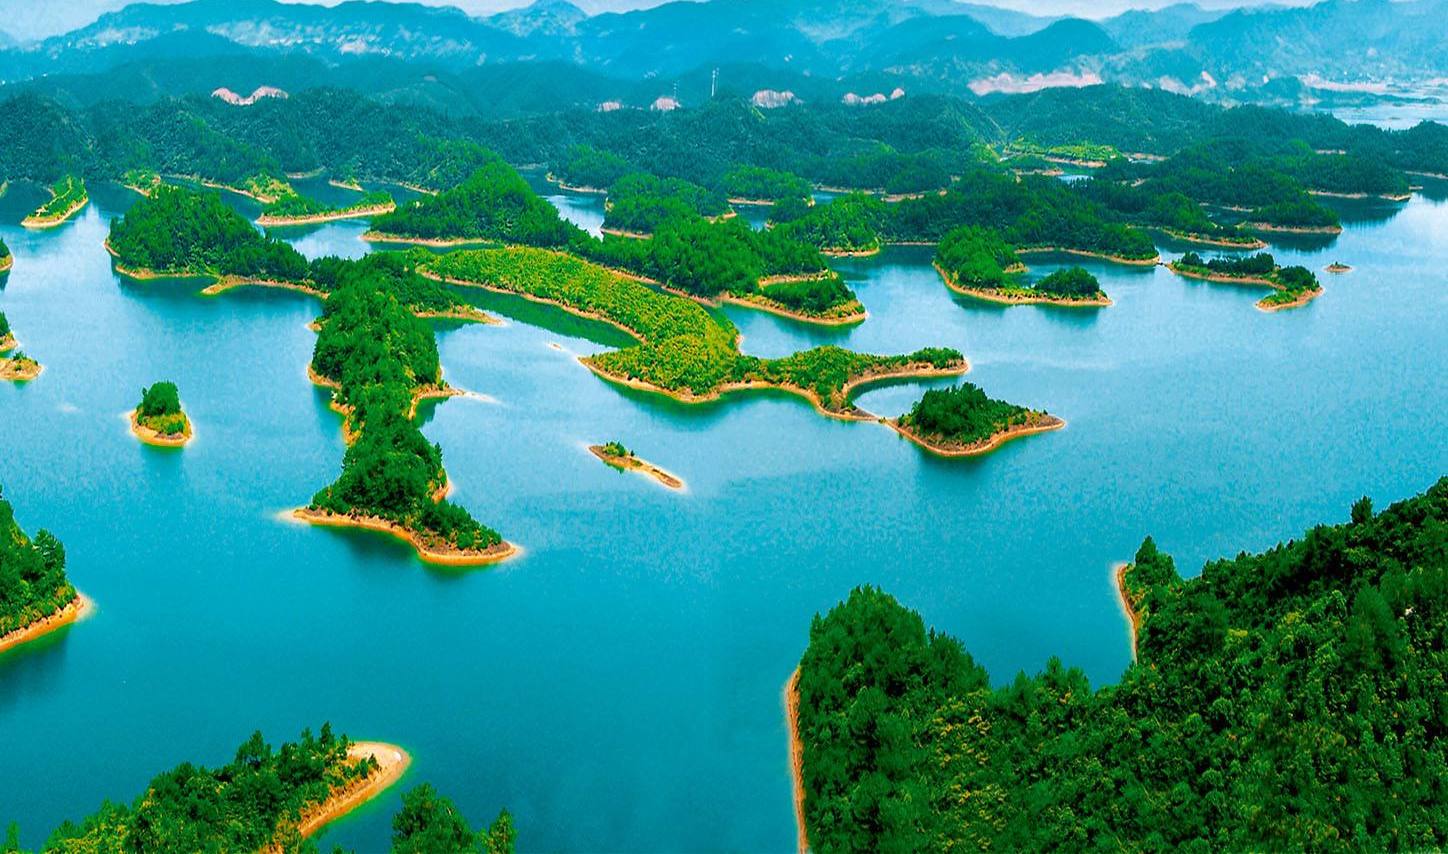 中国被誉为天下第一秀水的湖,优质湖水可以直接当饮用